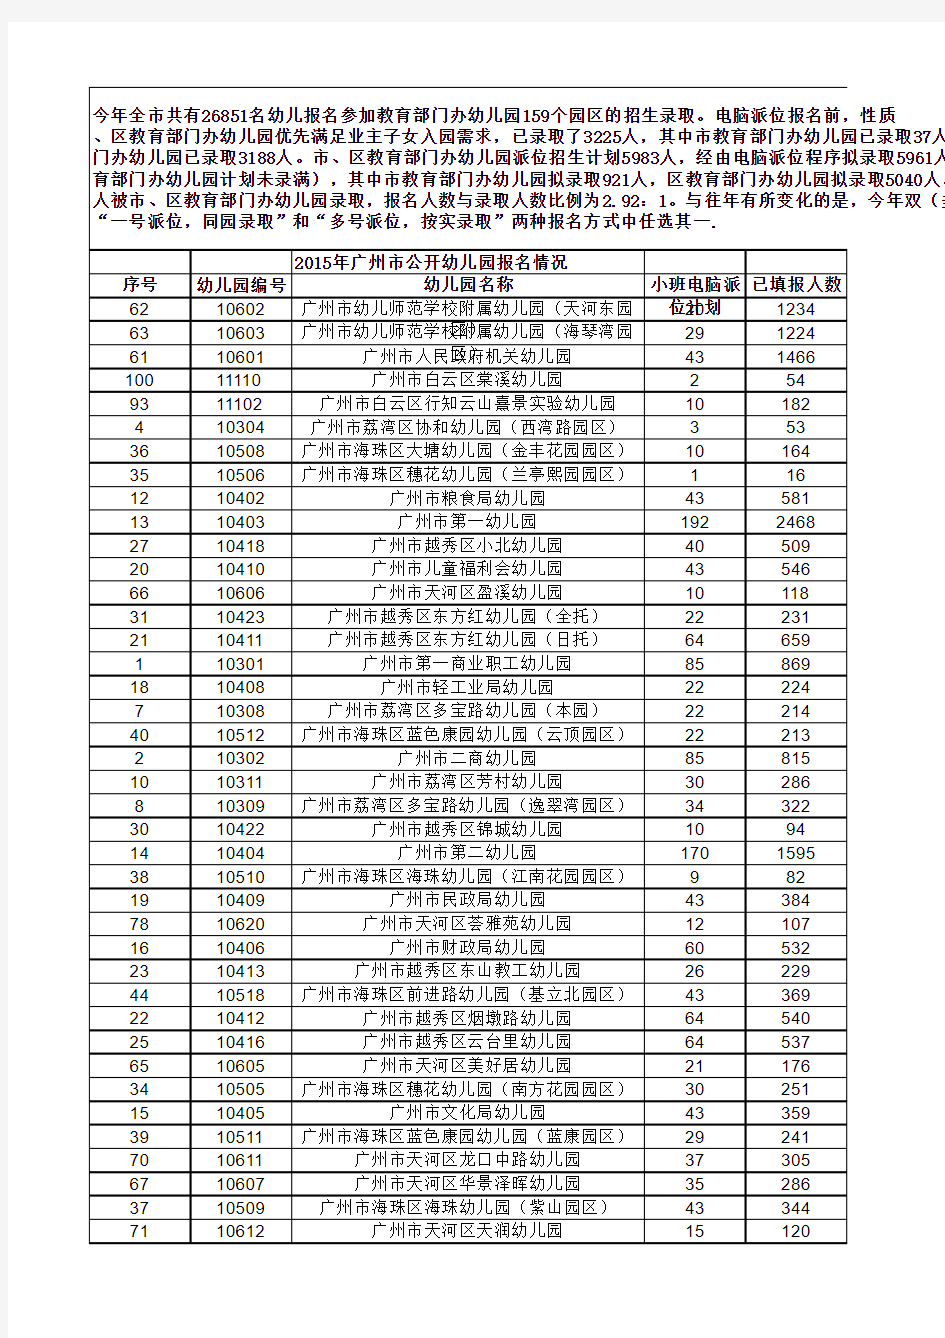 2015广州市公办幼儿园报名情况